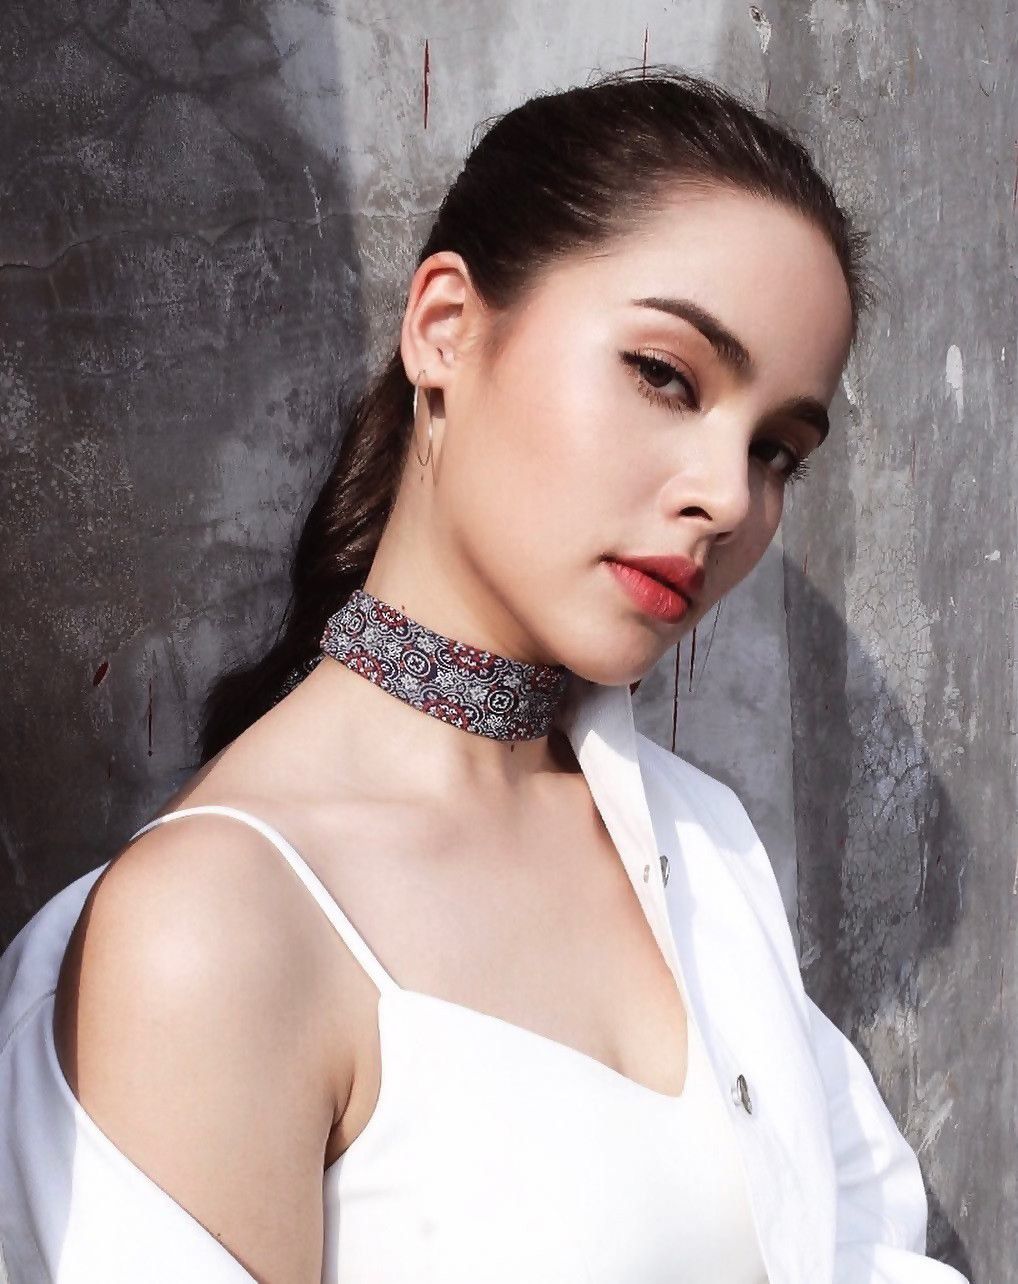 Top sao nữ đình đám Thái Lan có mũi đẹp nhất khiến chị em ghen tị (19)